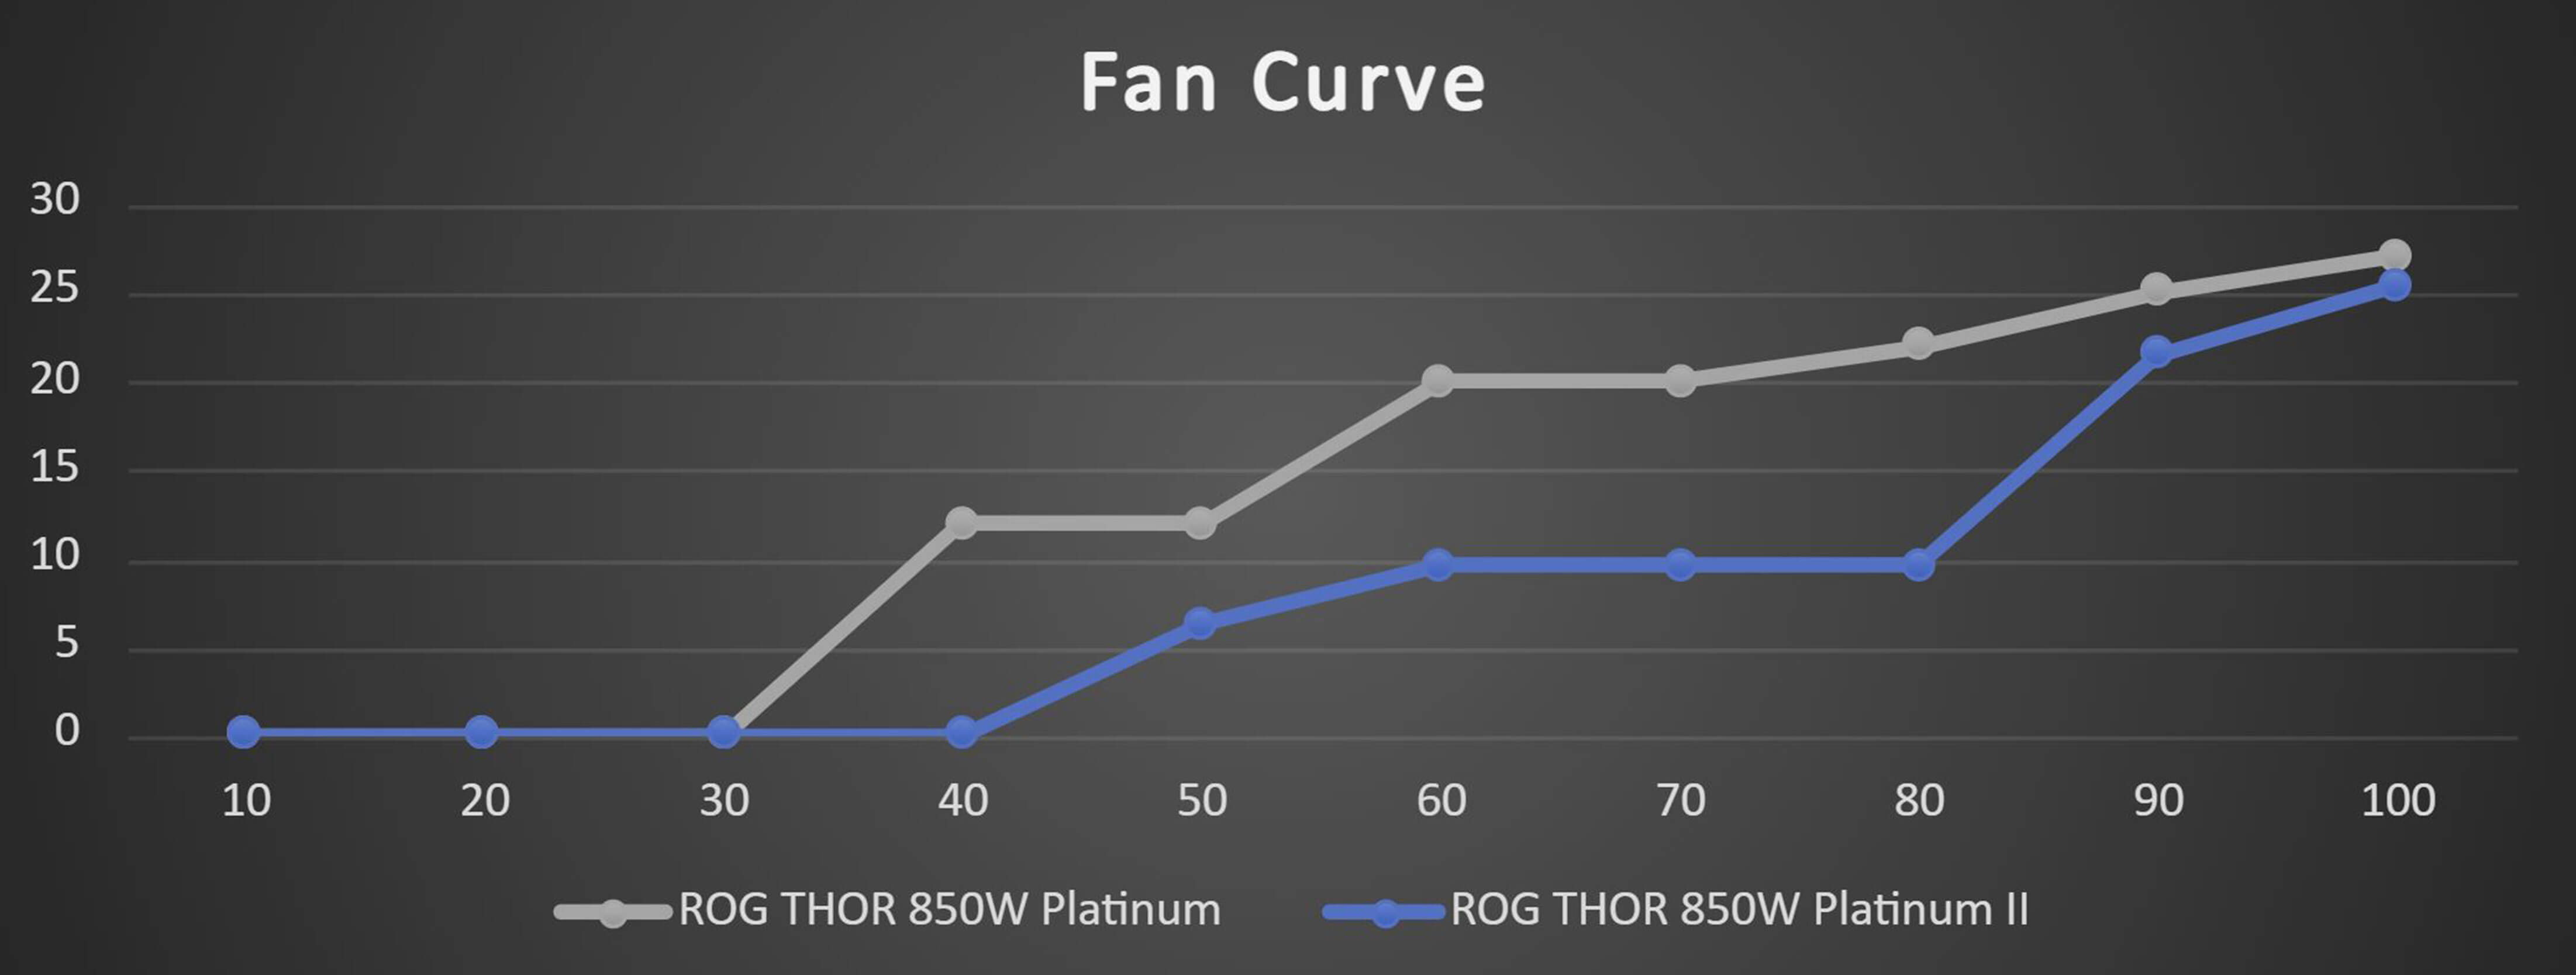 ROG Thor 850W Platinum II 0dB 技术图表。